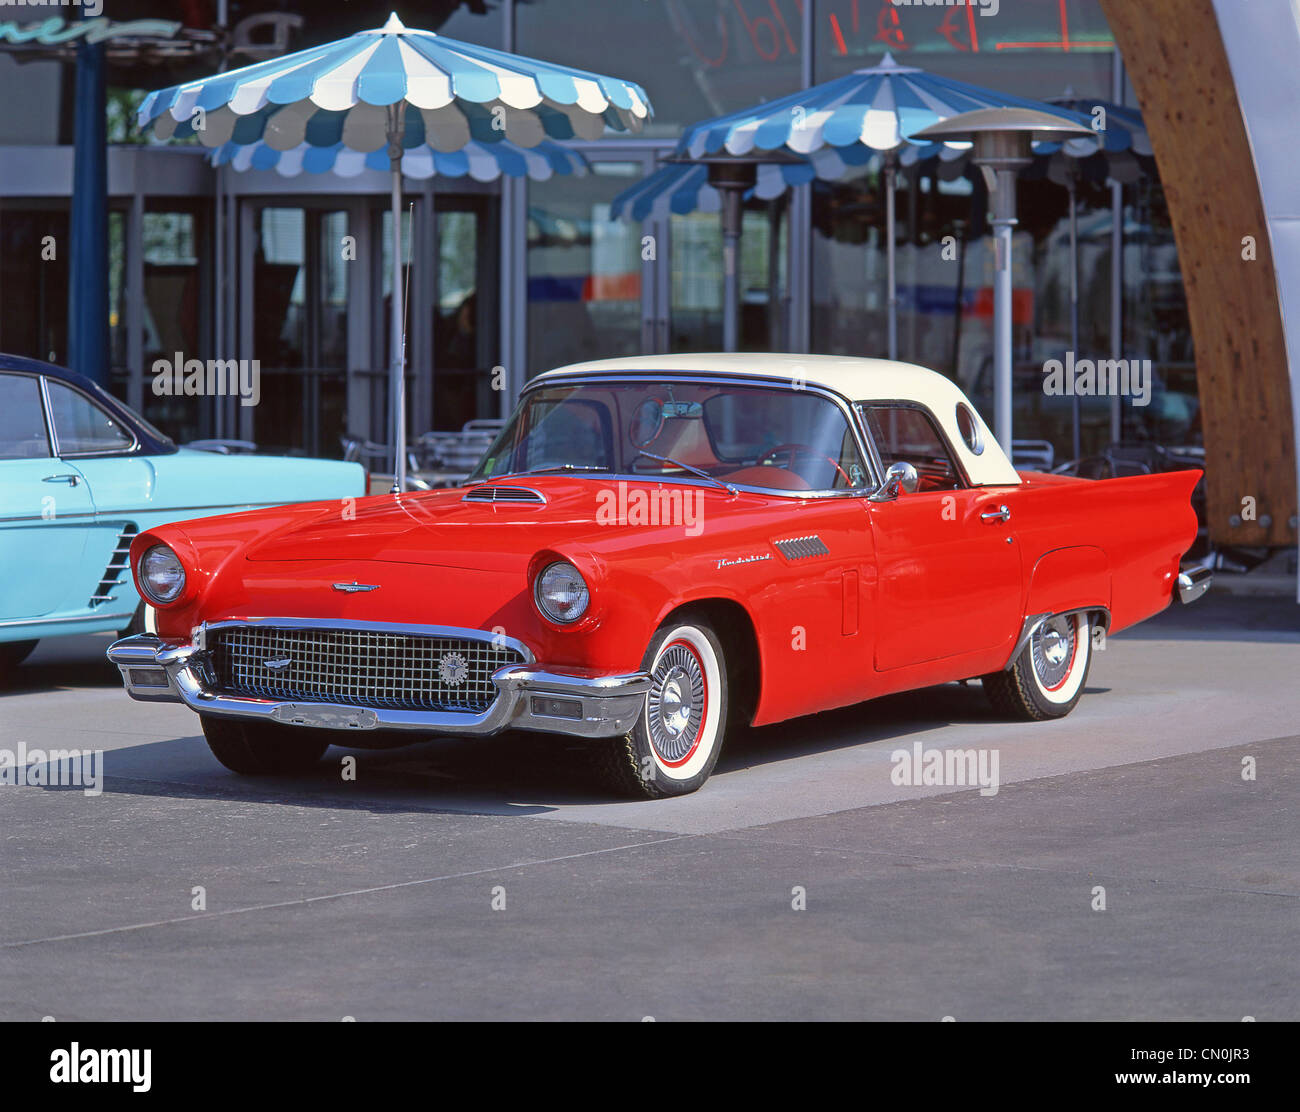 Klassische, amerikanische Thunderbird Cabrio, Los Angeles, California, Vereinigte Staaten von AmericaUnited Staaten von Amerika Stockfoto